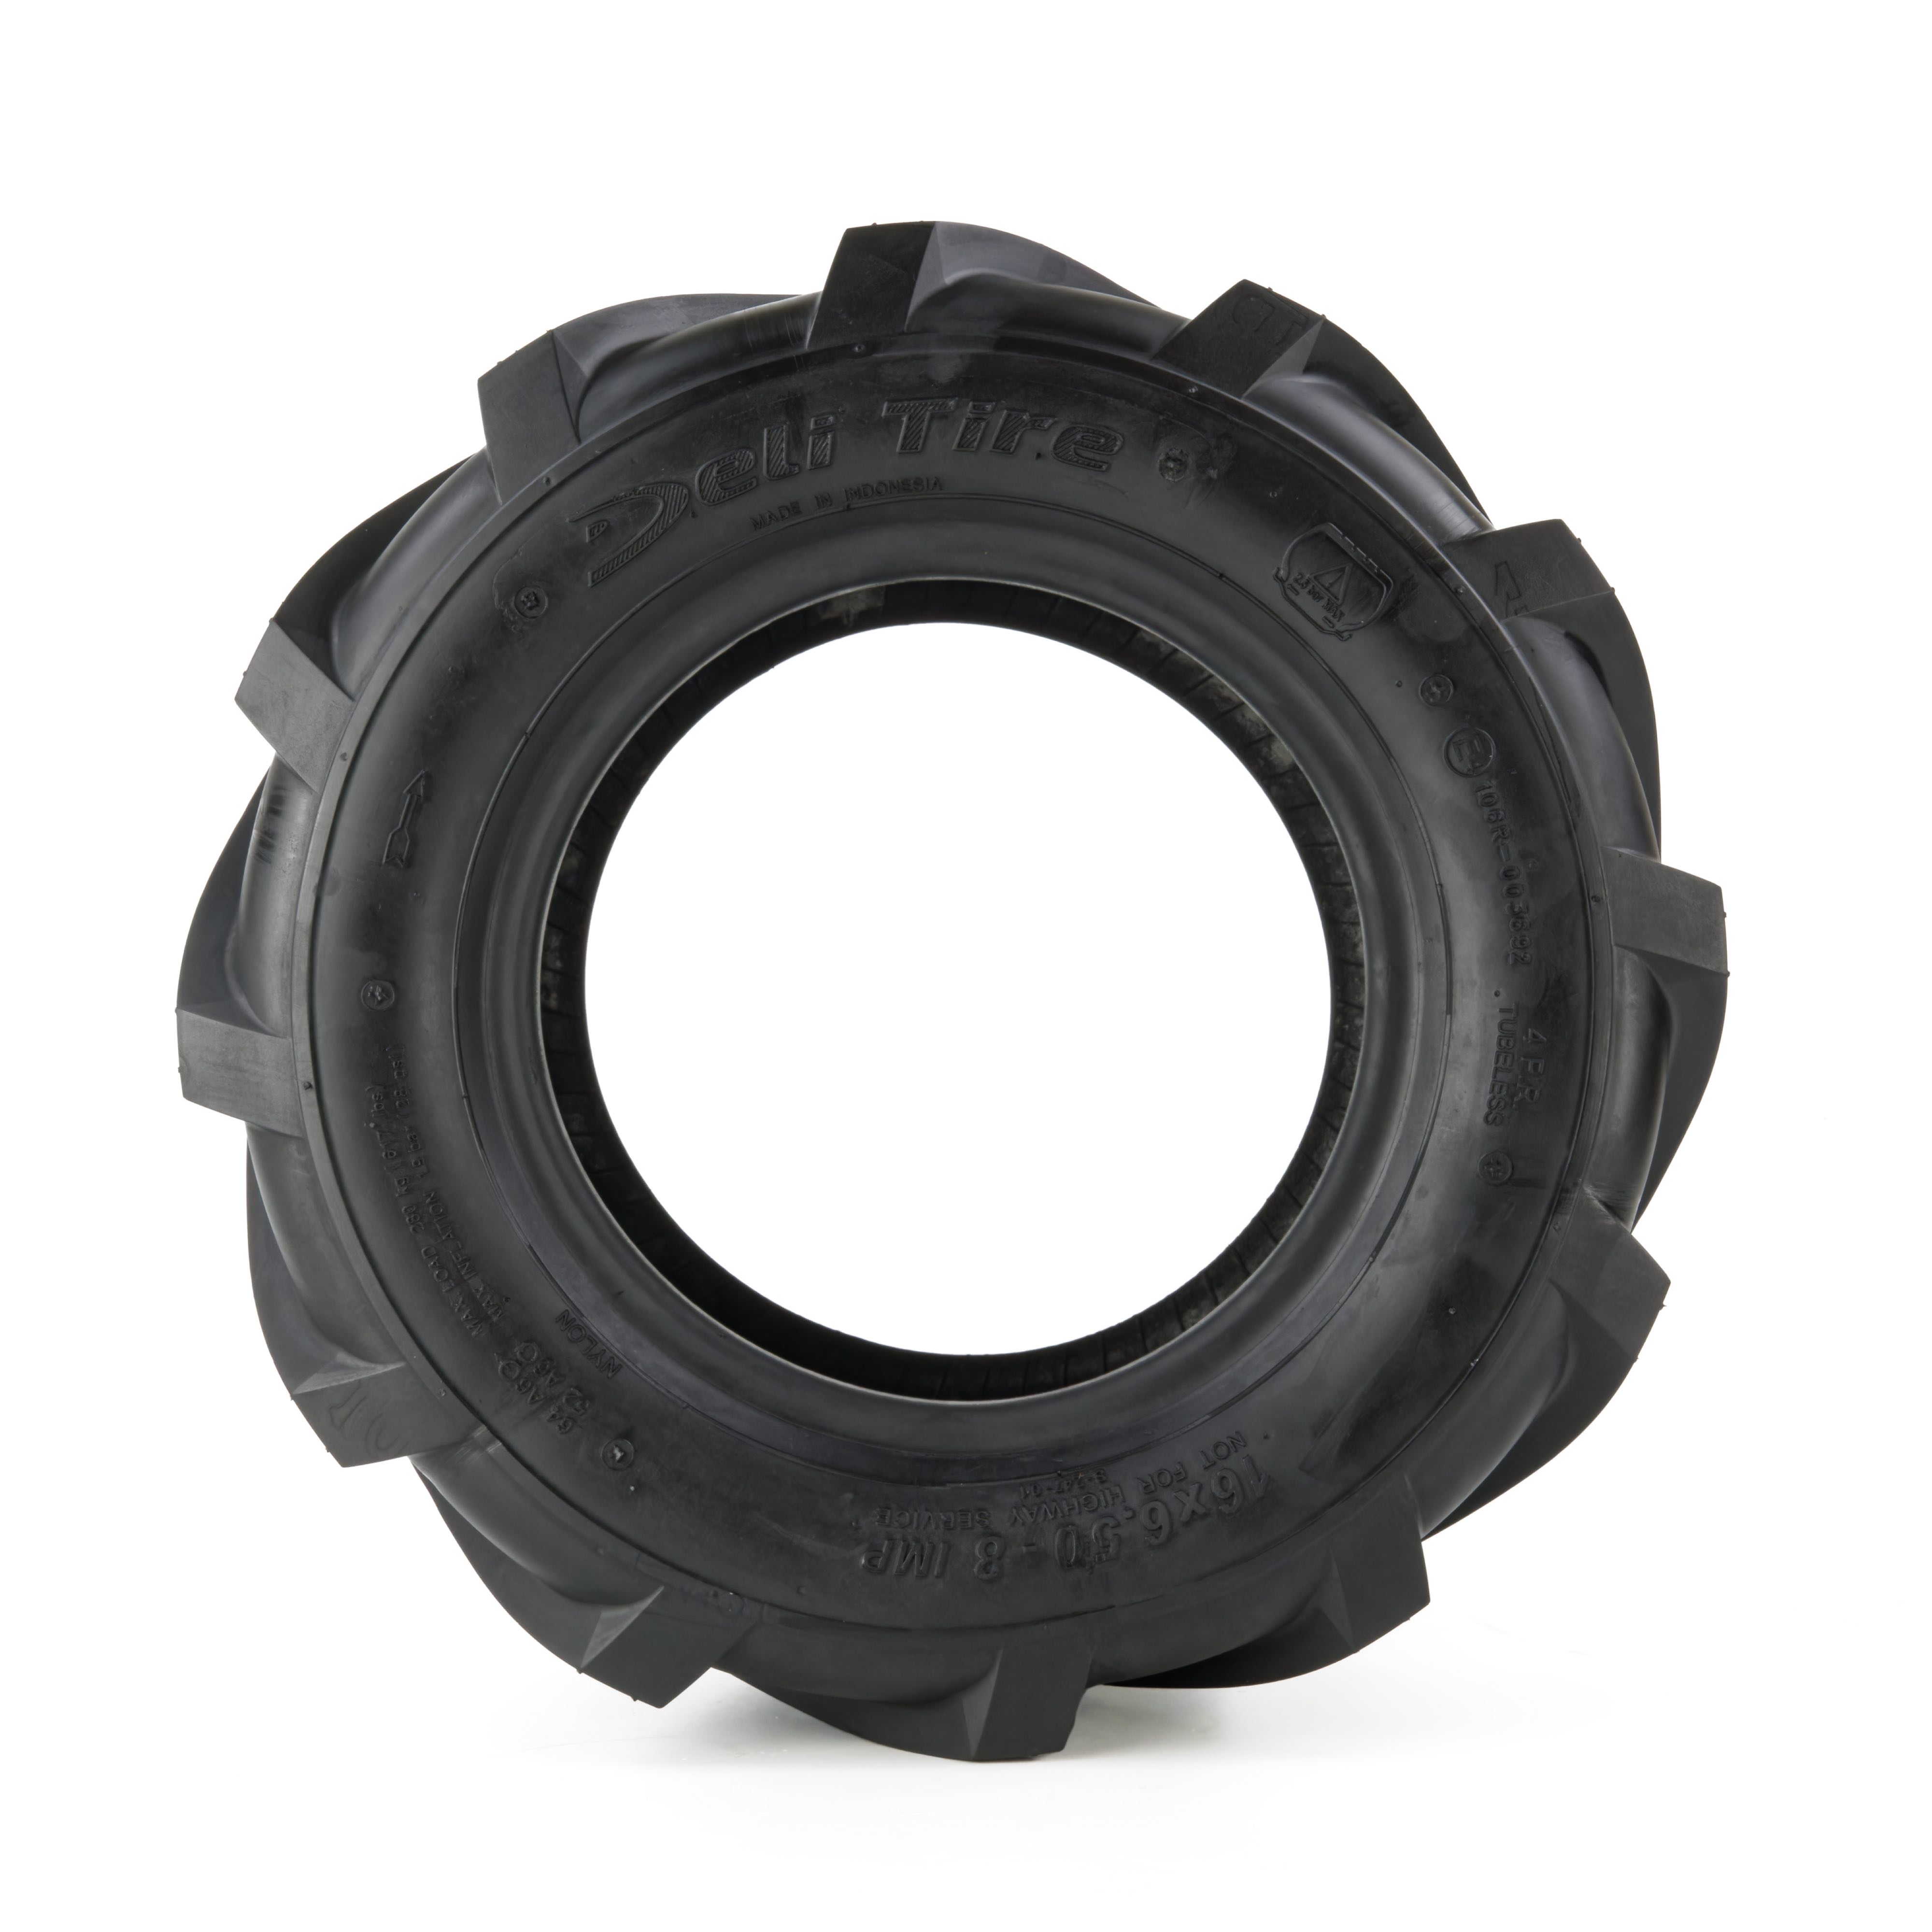 AS-Reifen für Kleintraktor, 16x6.50-8, 4PR, TL, Deli S-247 - Flankenansicht